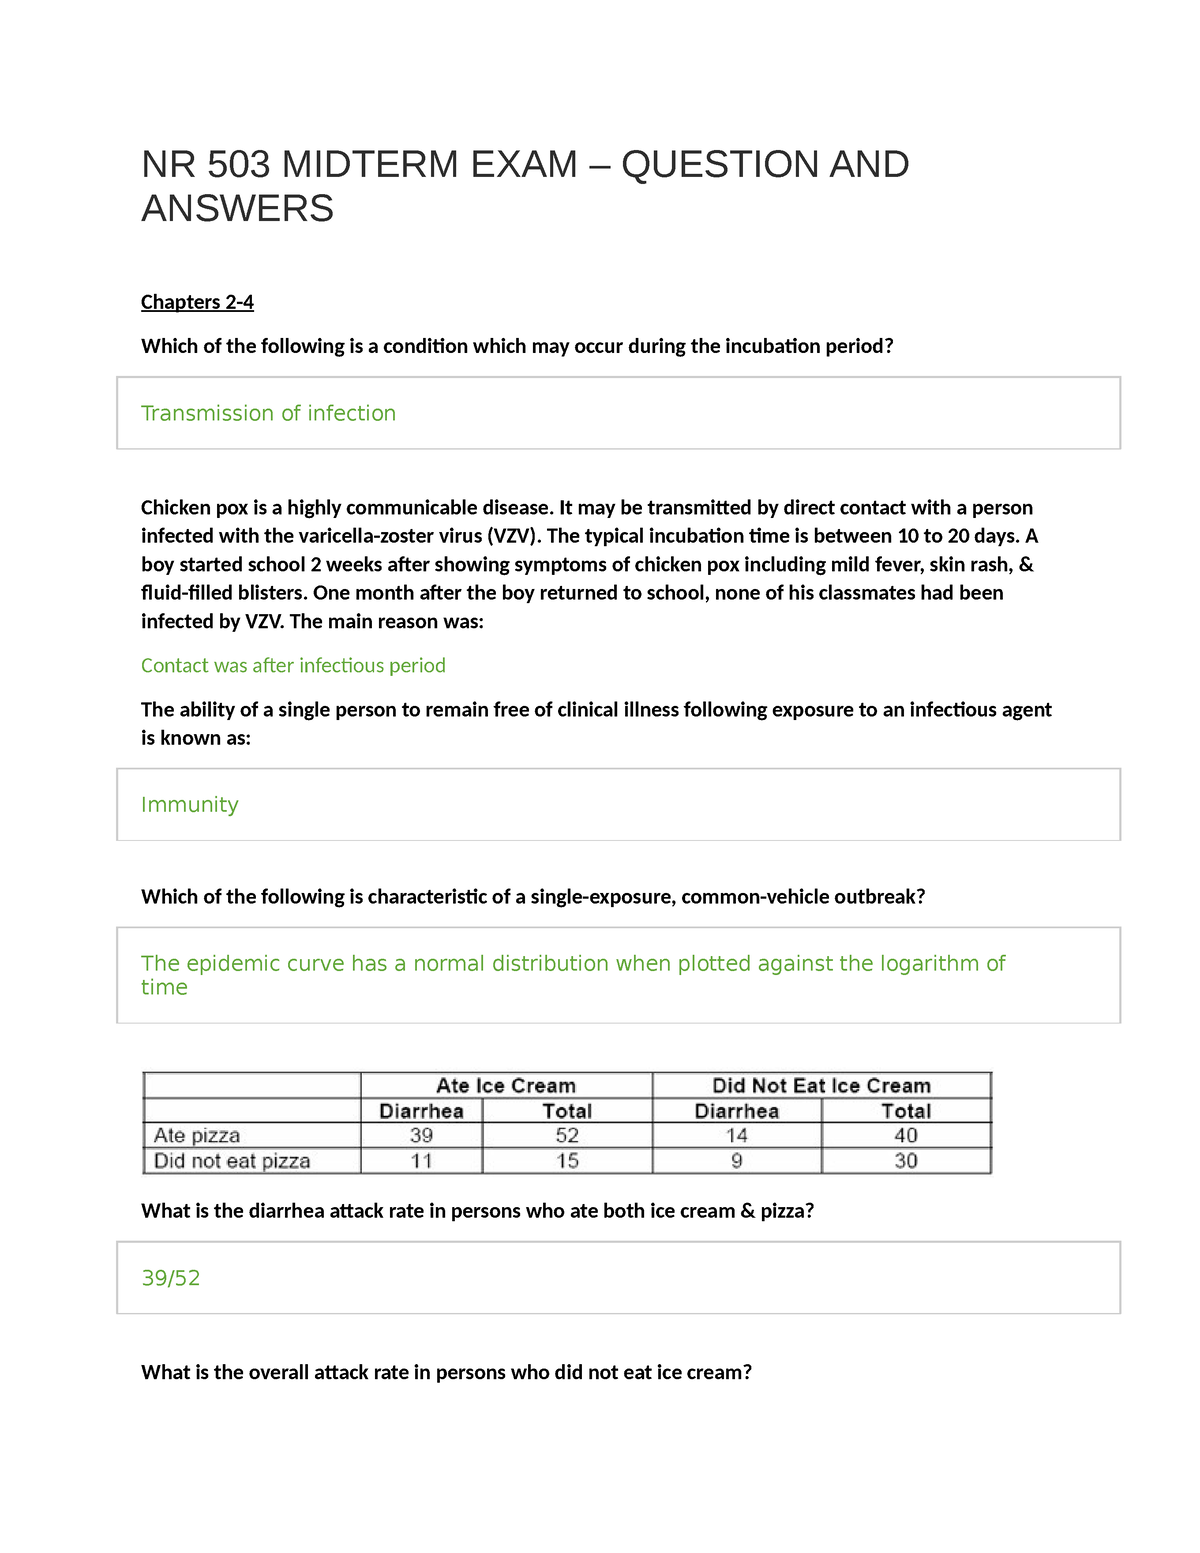 NR 503 Week 8 Final Quiz (LATEST) 100% Correct Answers - Nursing